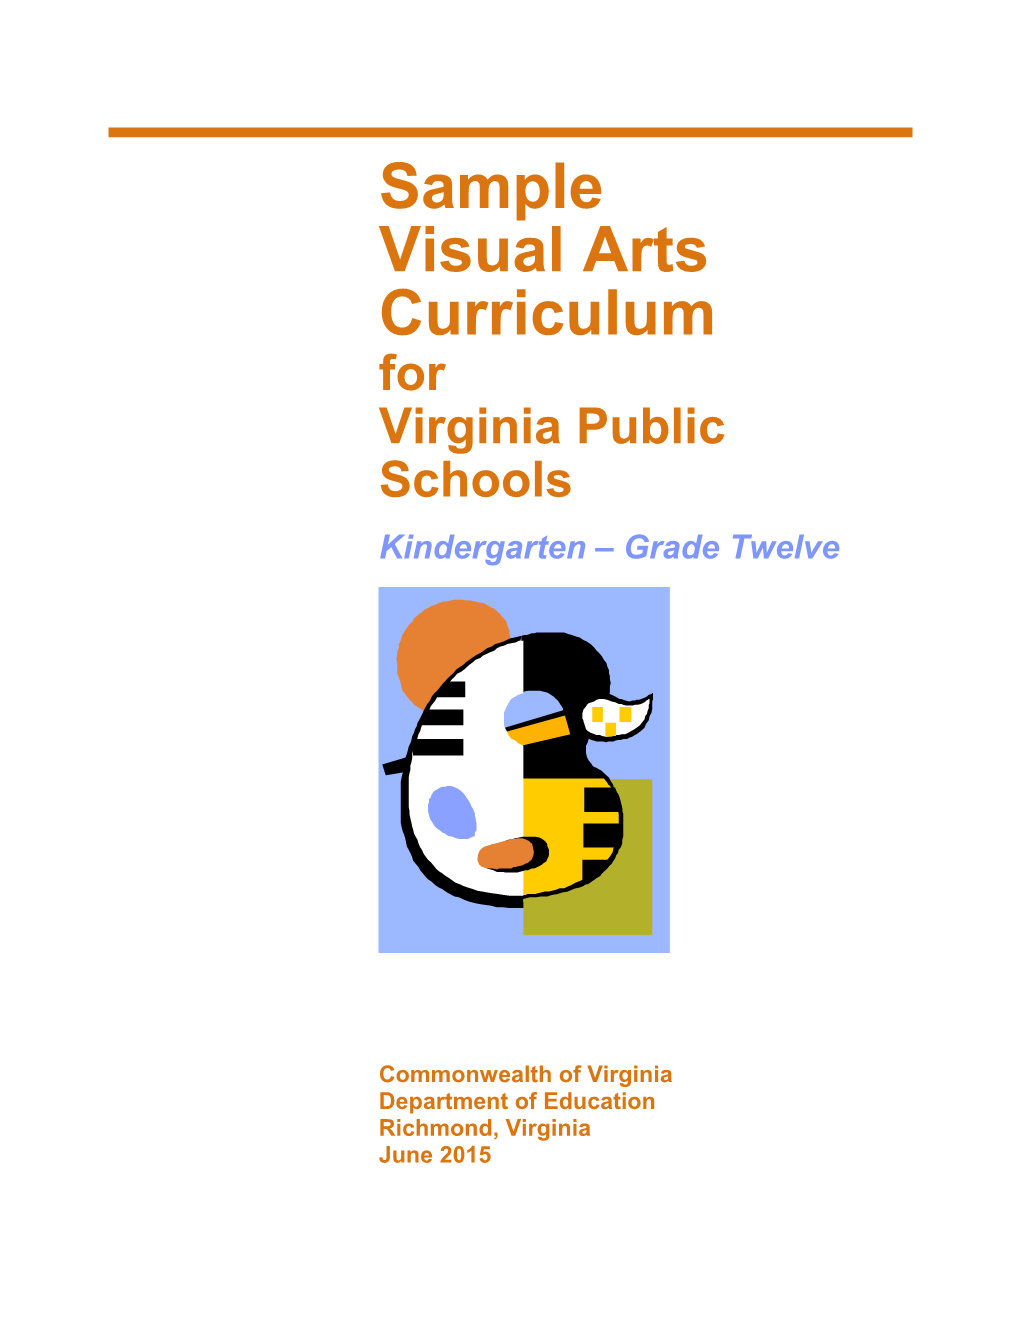 Sample Visual Arts Curriculum for Virginia Public Schools